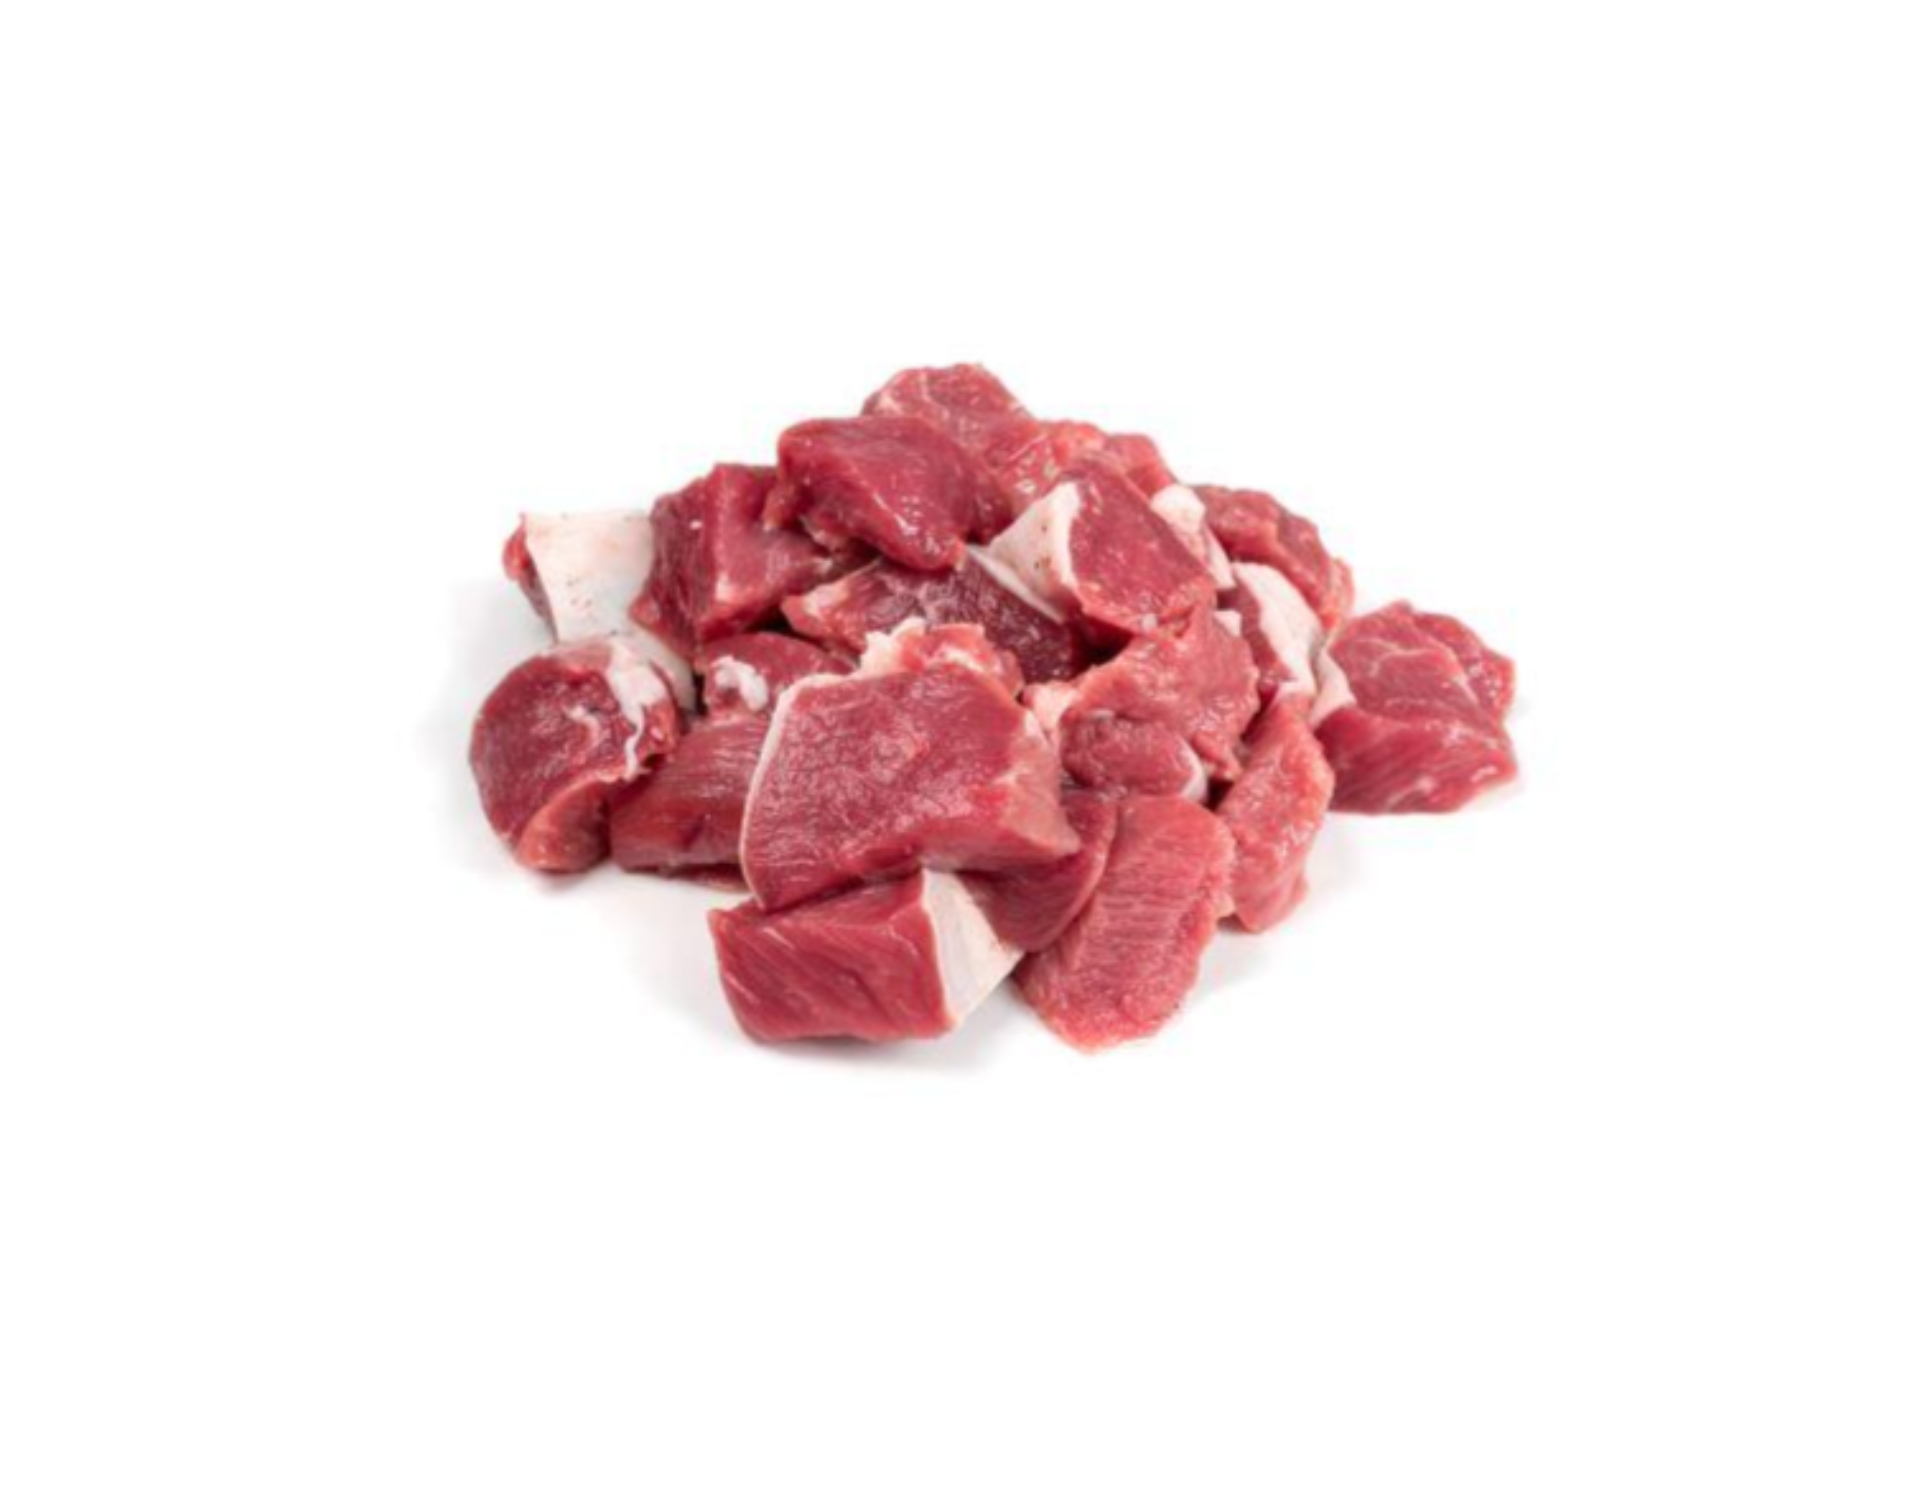 goat meat cuts